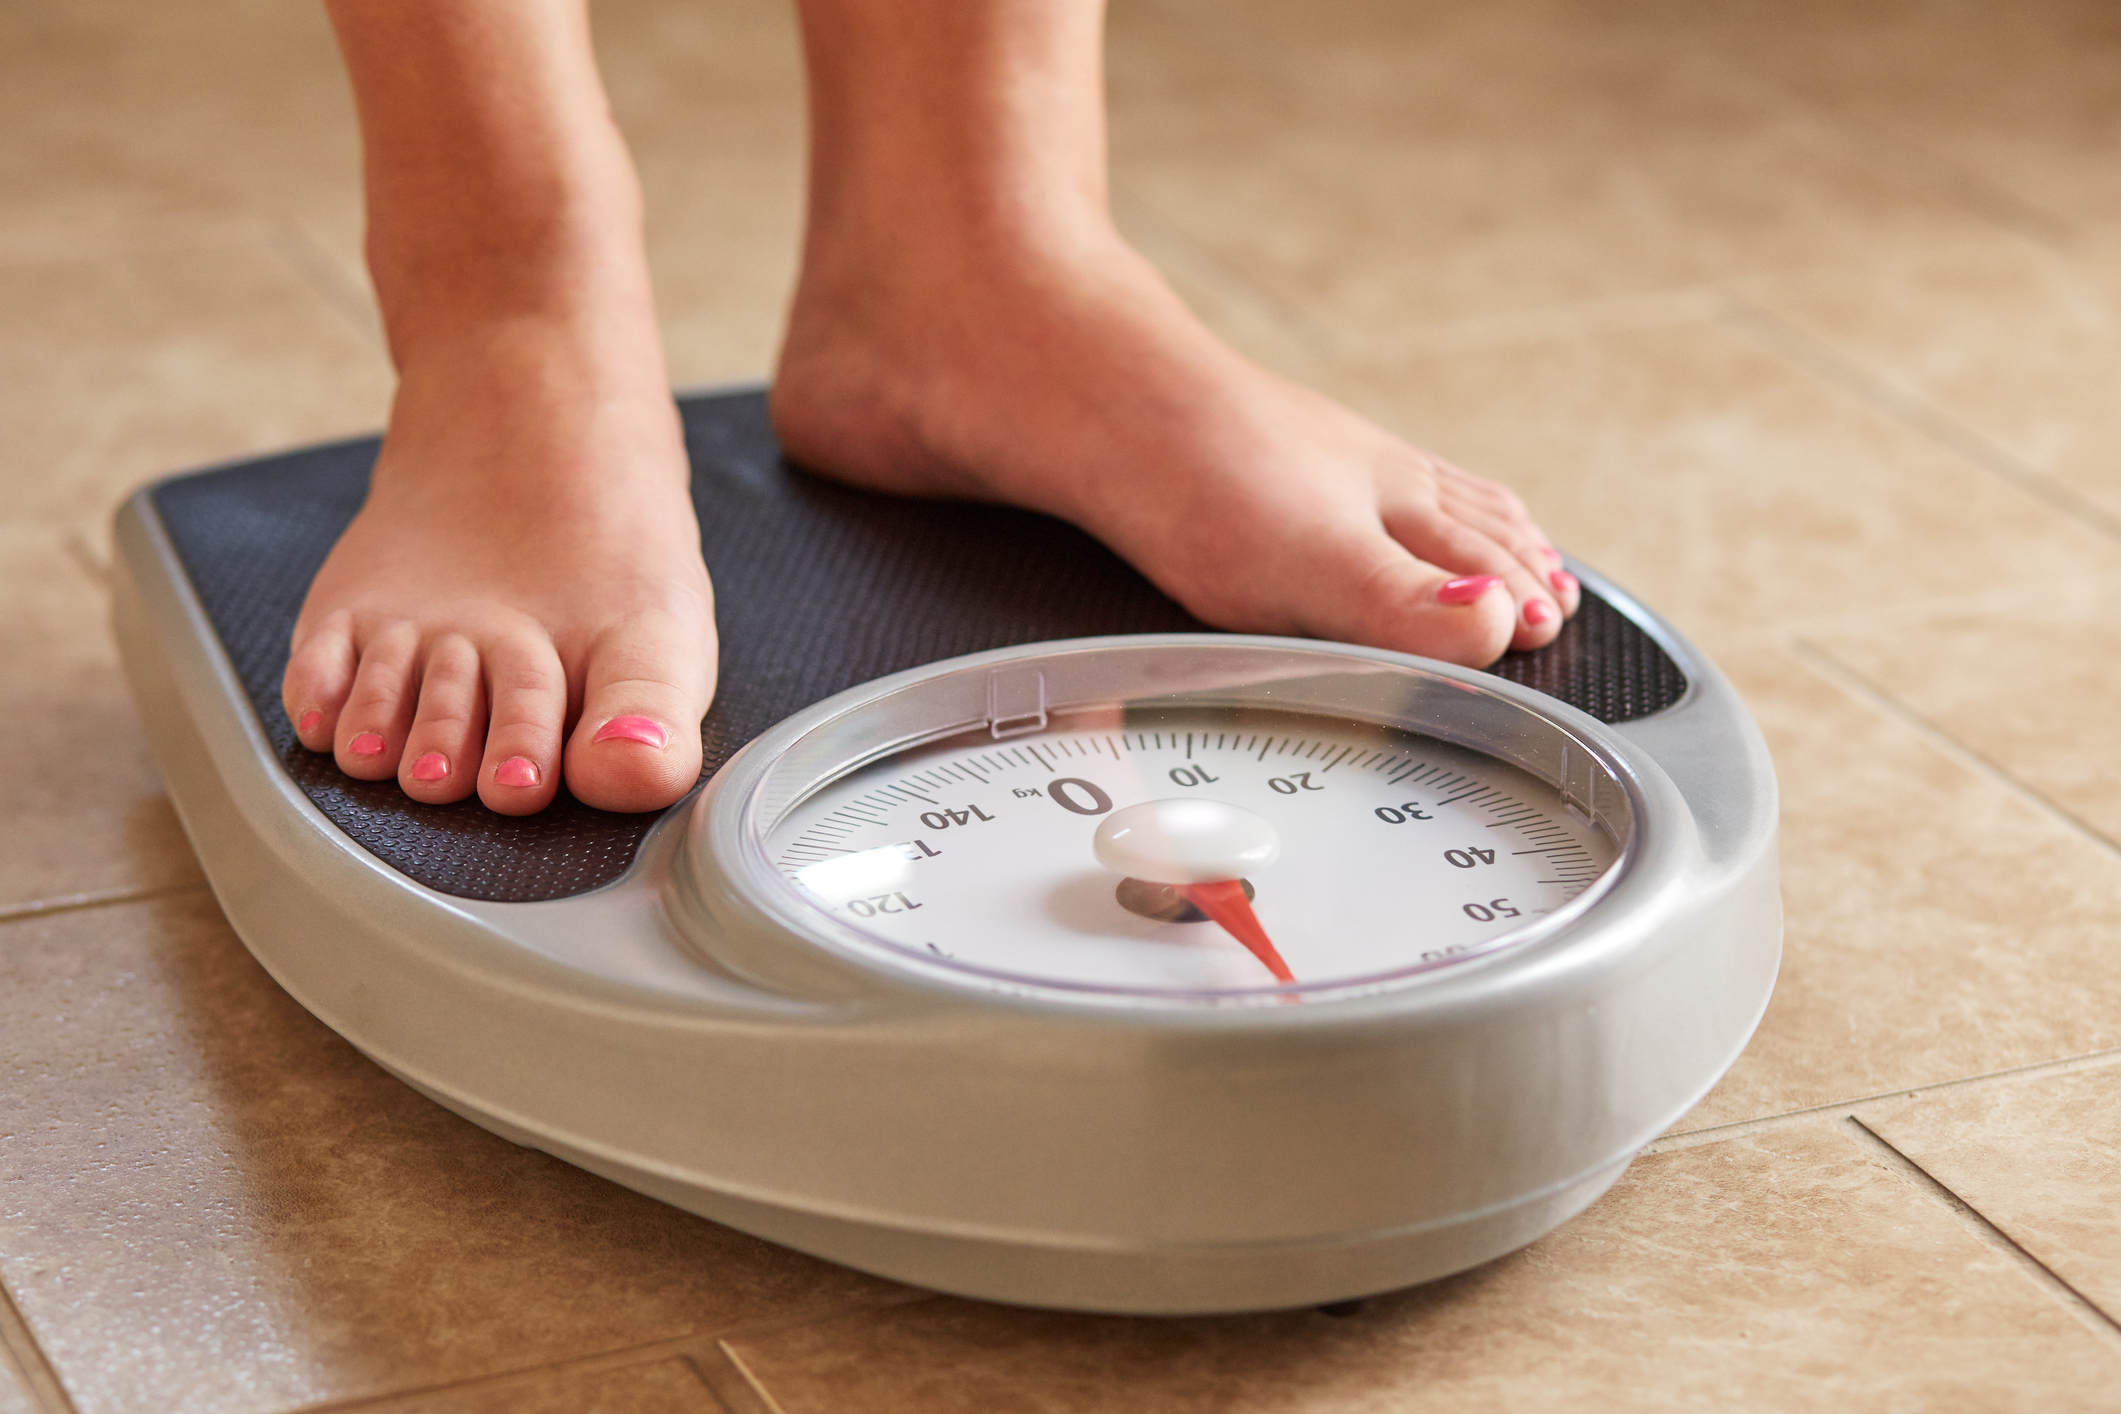  बढ़ता वजन और मोटापा बन सकता है कई गंभीर बीमारियों का कारण, वजन कम करने के लिए अपनाएं इन 5 तरीकों को